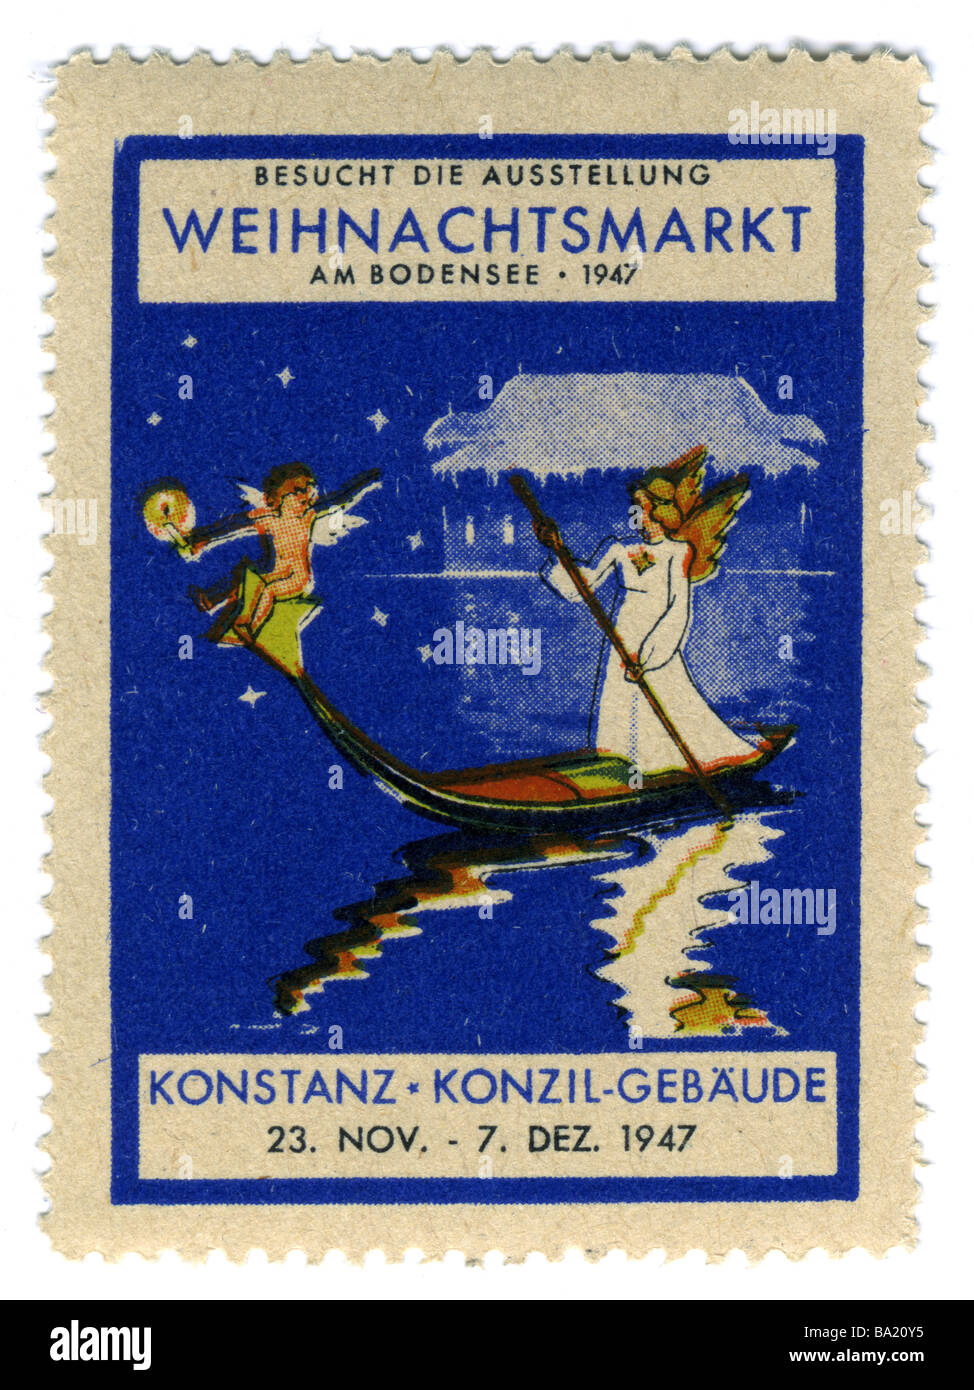 Werbung, Briefmarken, Weihnachtsmarkt-Fee, Konstanz am Bodensee, Deutschland, 23.11. - 7.12.1947, Stockfoto